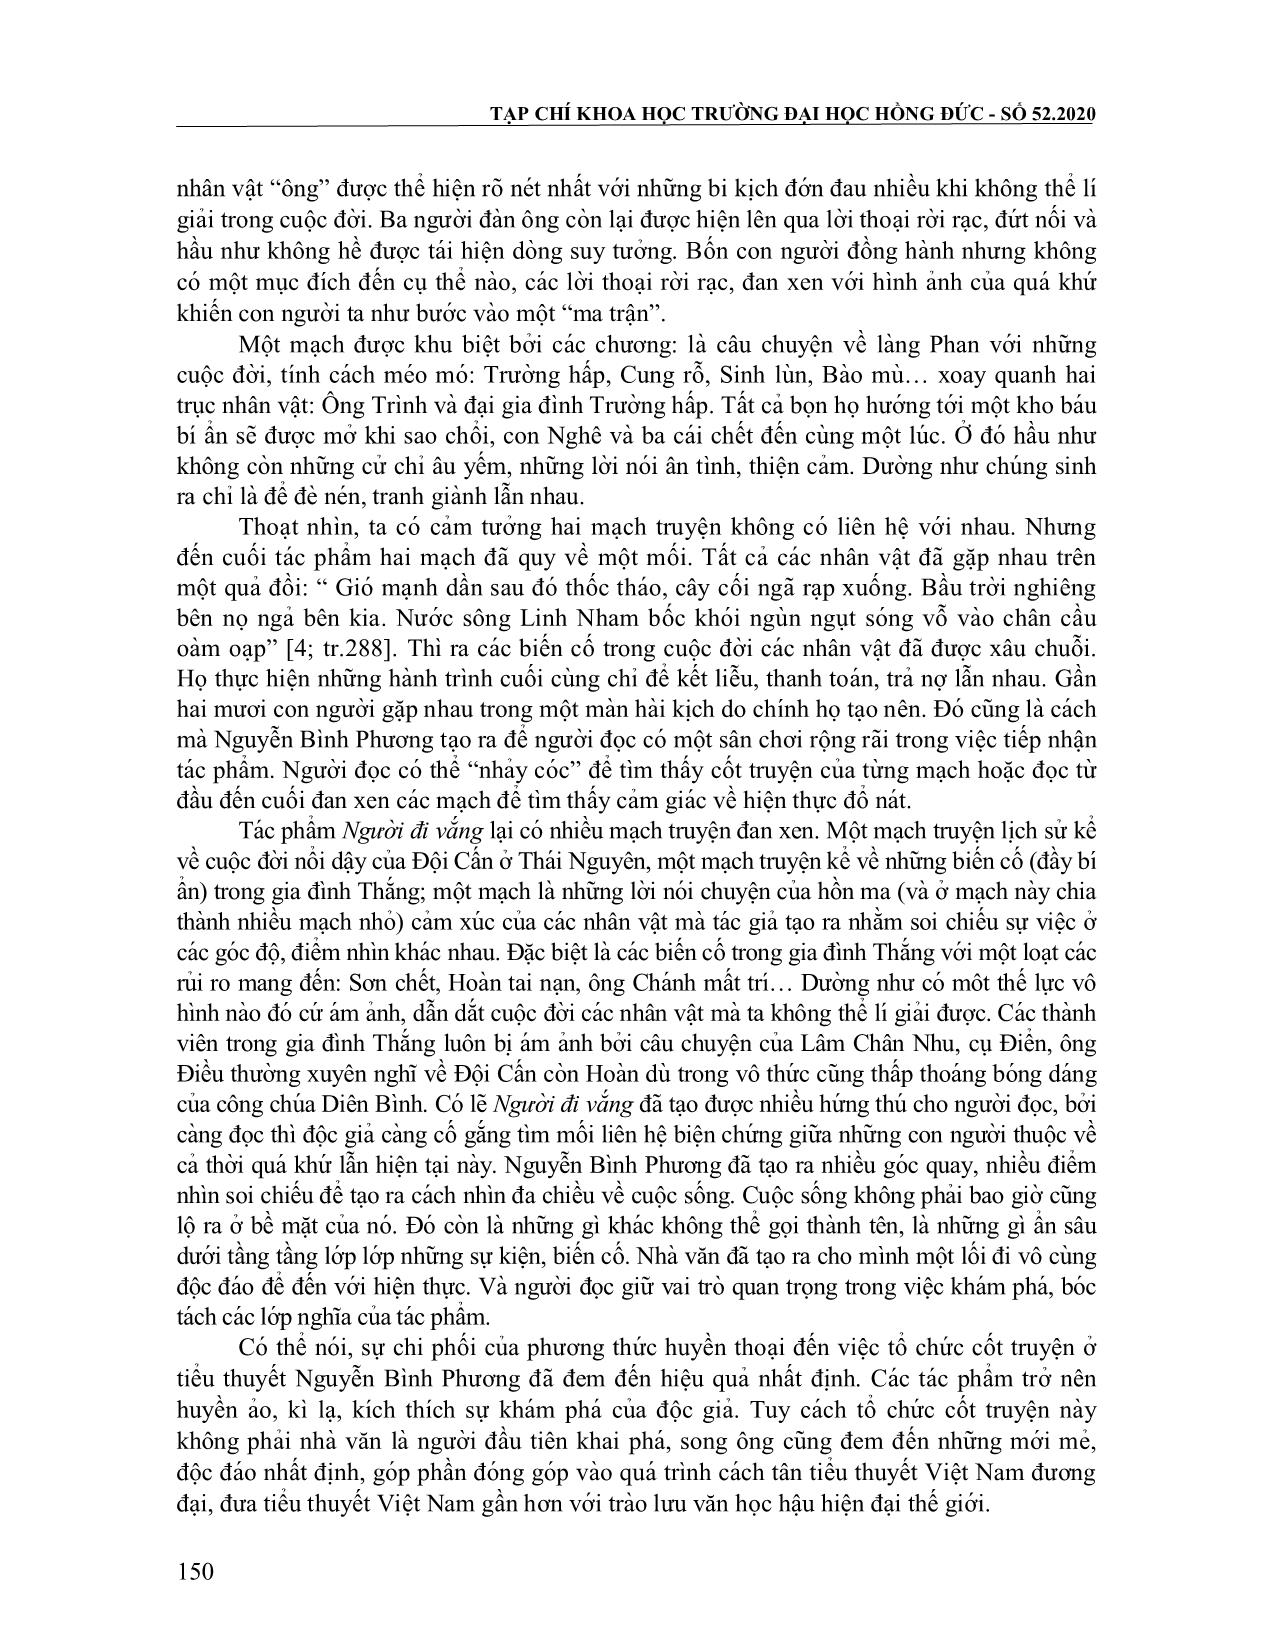 Phương thức huyền thoại hóa trong tổ chức cốt truyện của tiểu thuyết Nuyễn Bình Phương trang 7